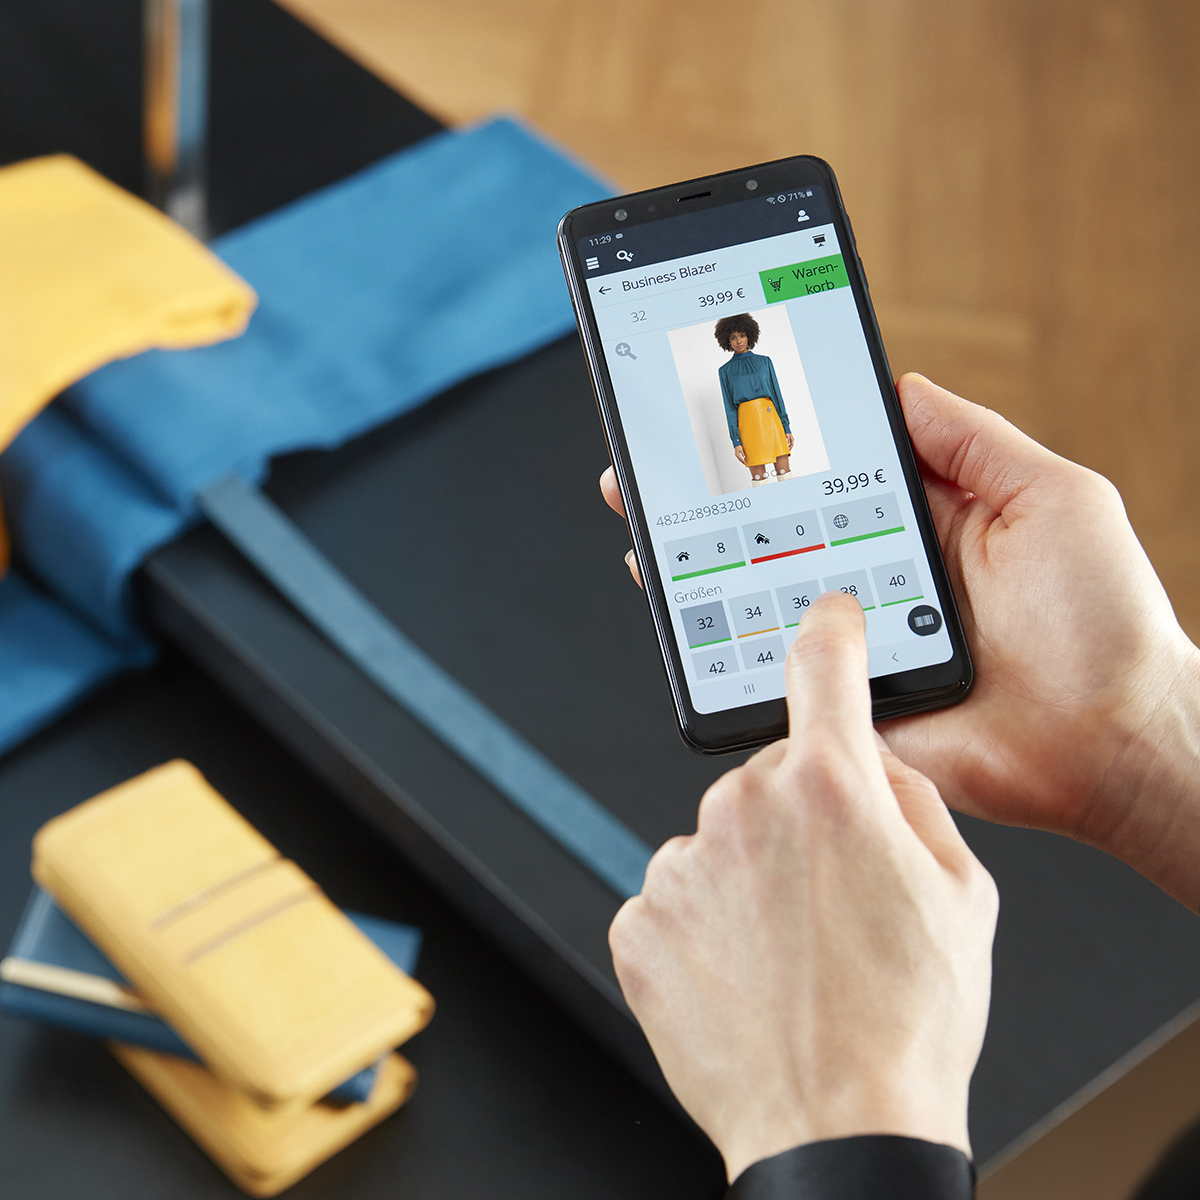 Detailansicht des InStore Assistants: Verkäuferin sieht in der Handy-App ein Outfit an und prüft die Bestände